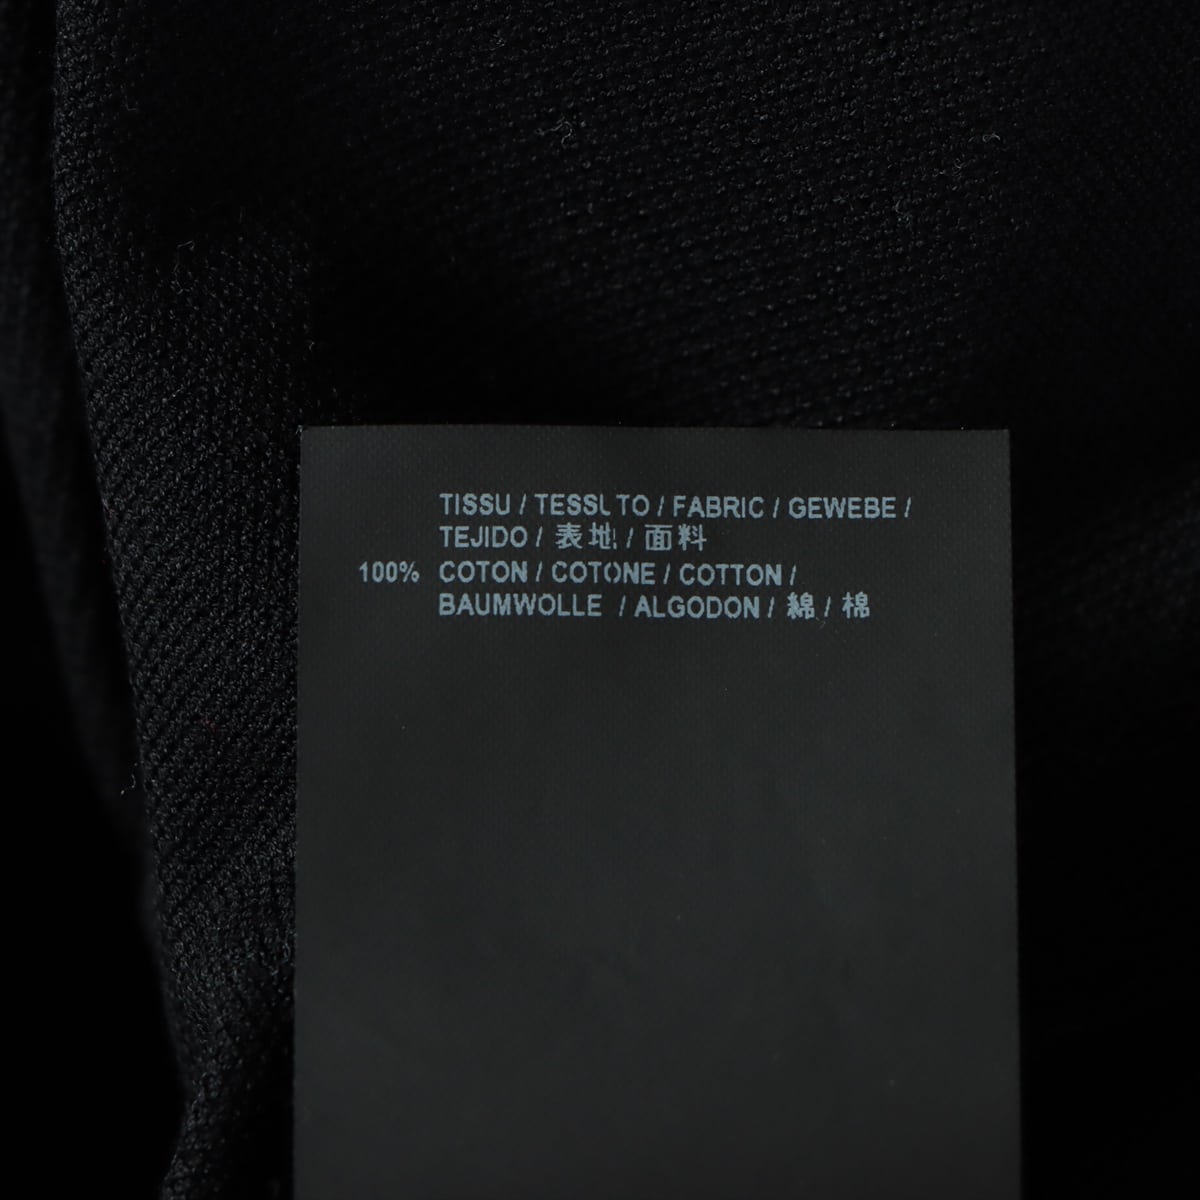 サンローランパリ 16年 コットン ポロシャツ L メンズ ブラック  カサンドラロゴ